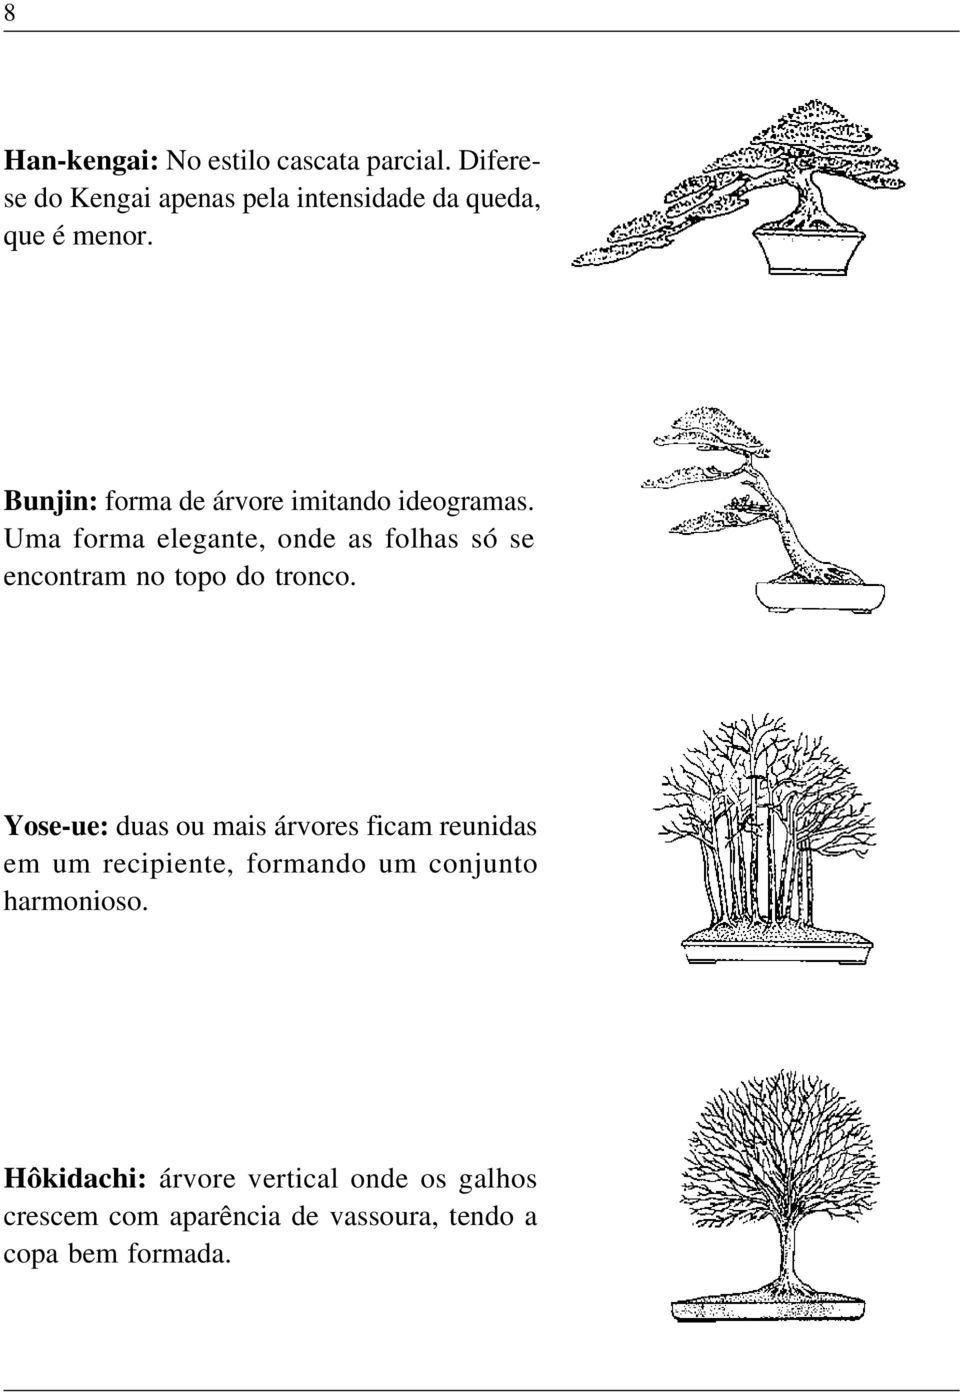 Bunjin: forma de árvore imitando ideogramas.